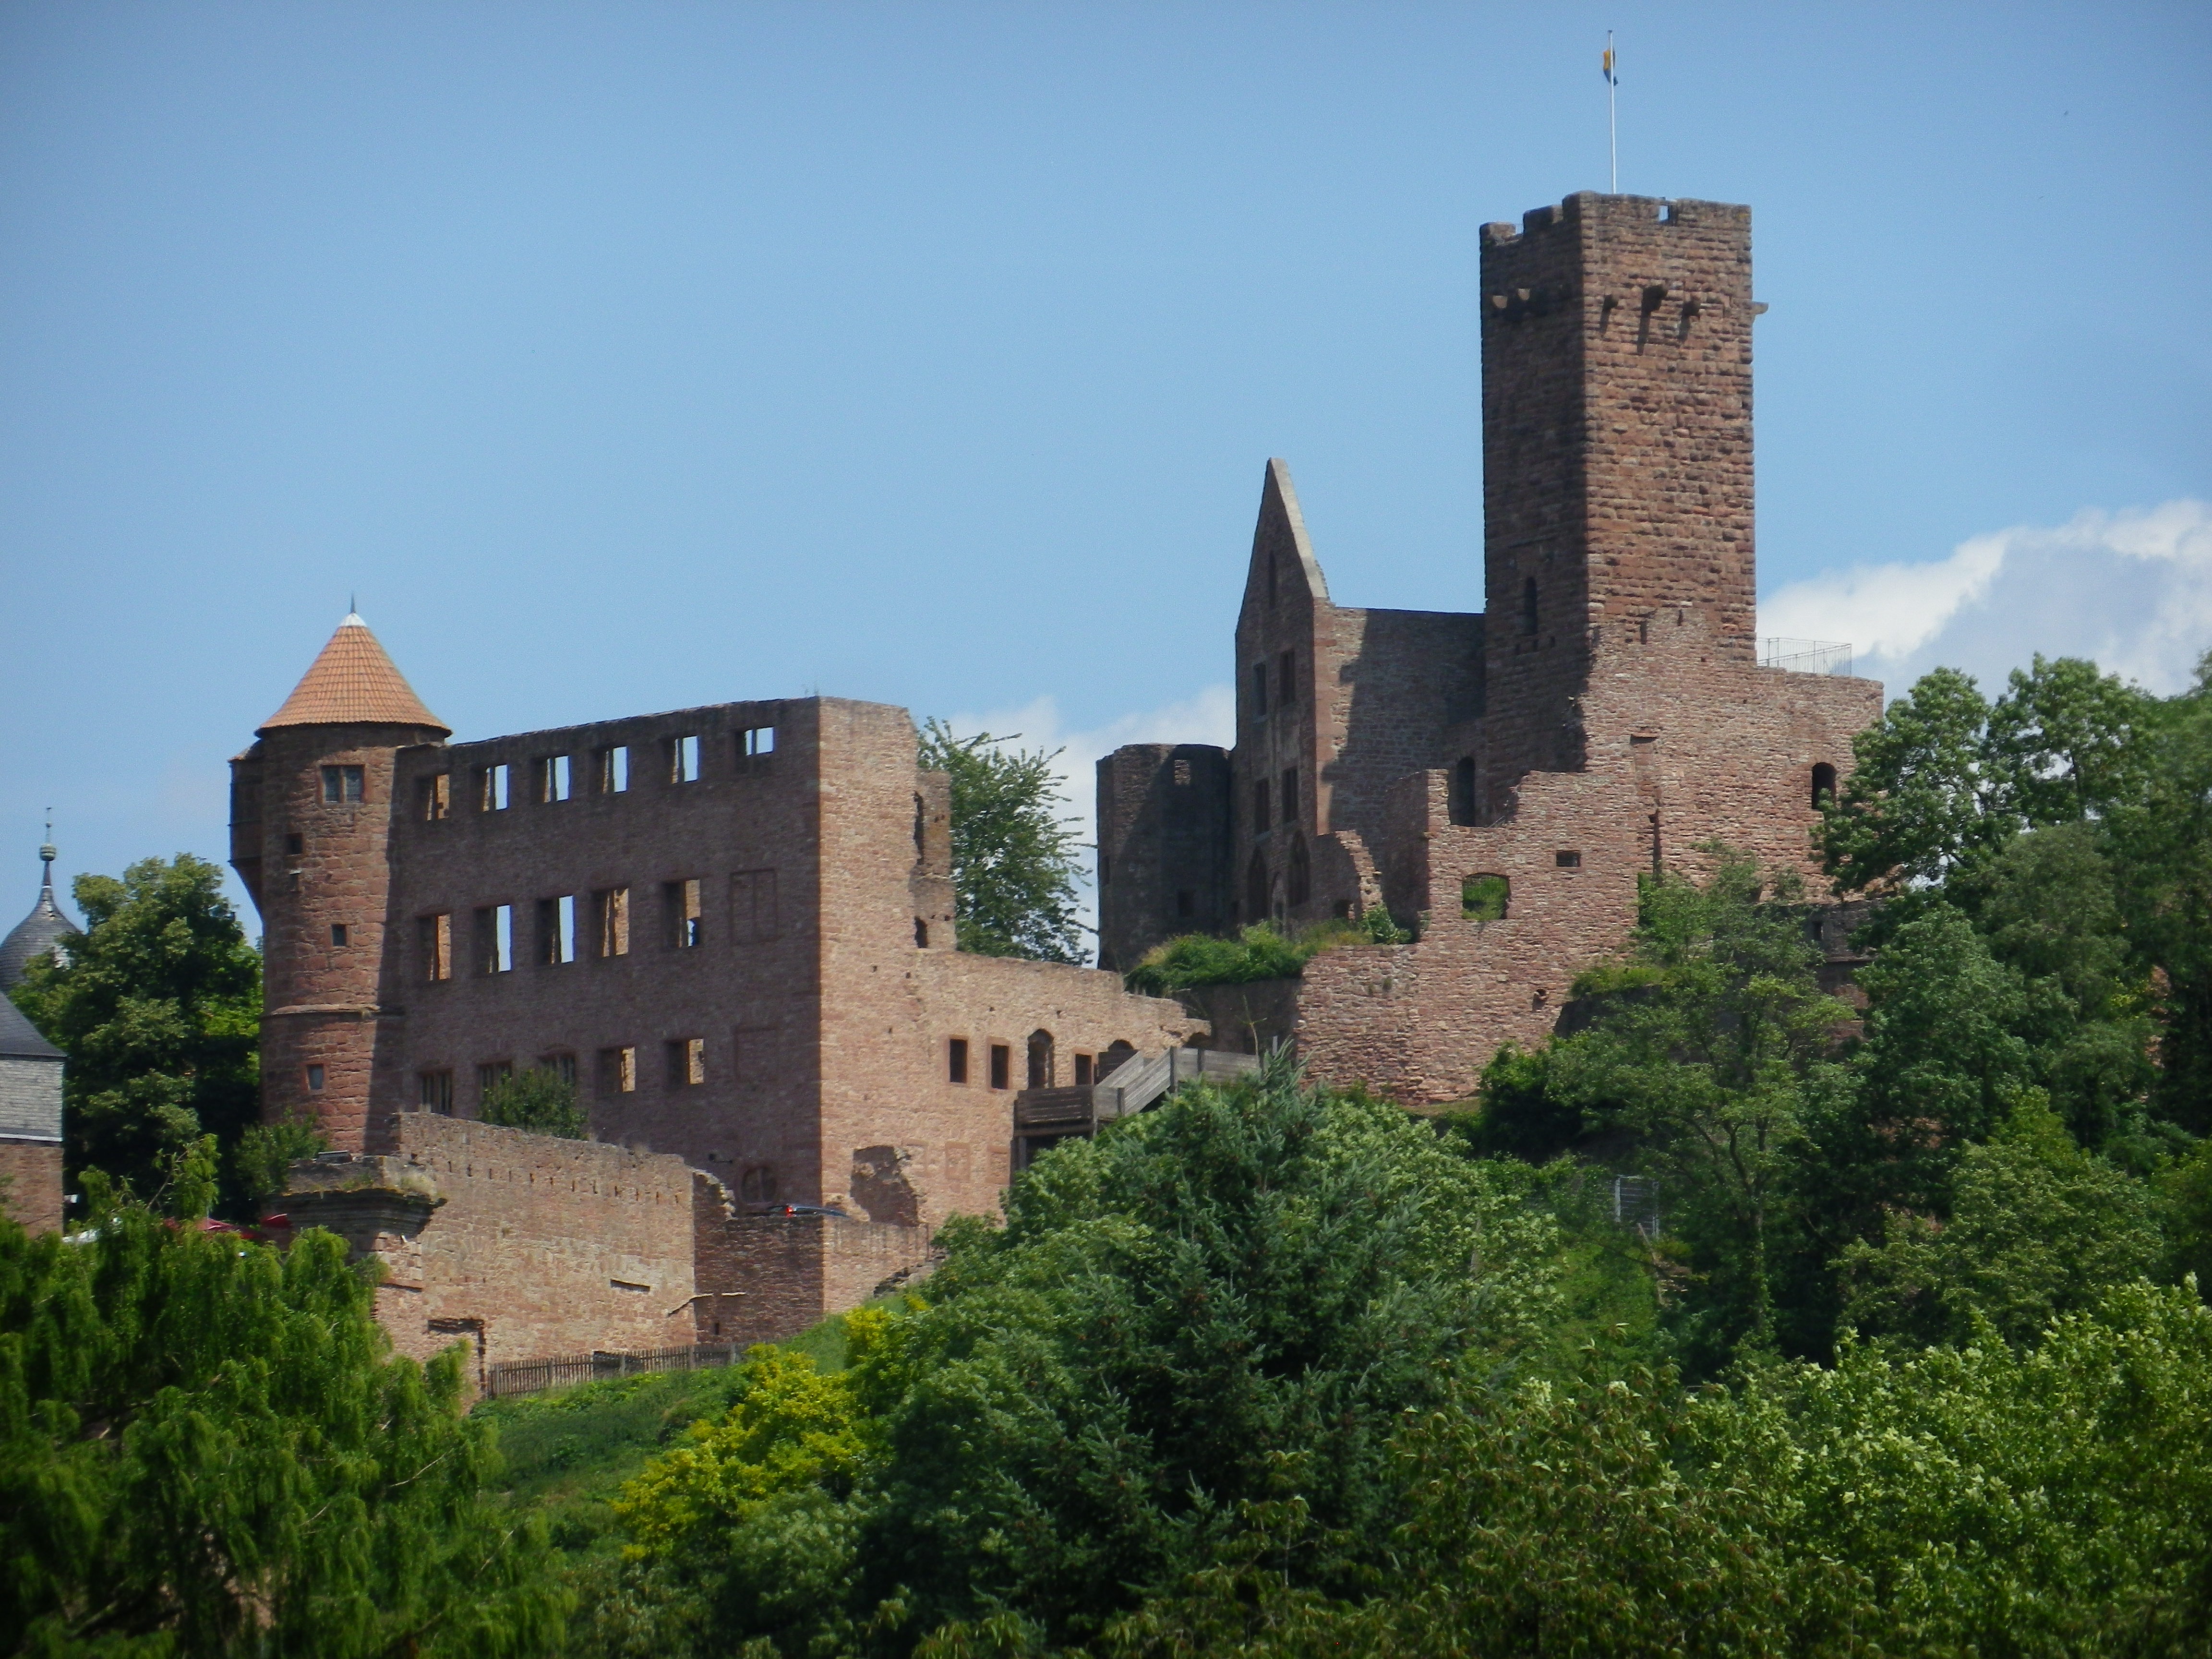 Wertheim's Castle